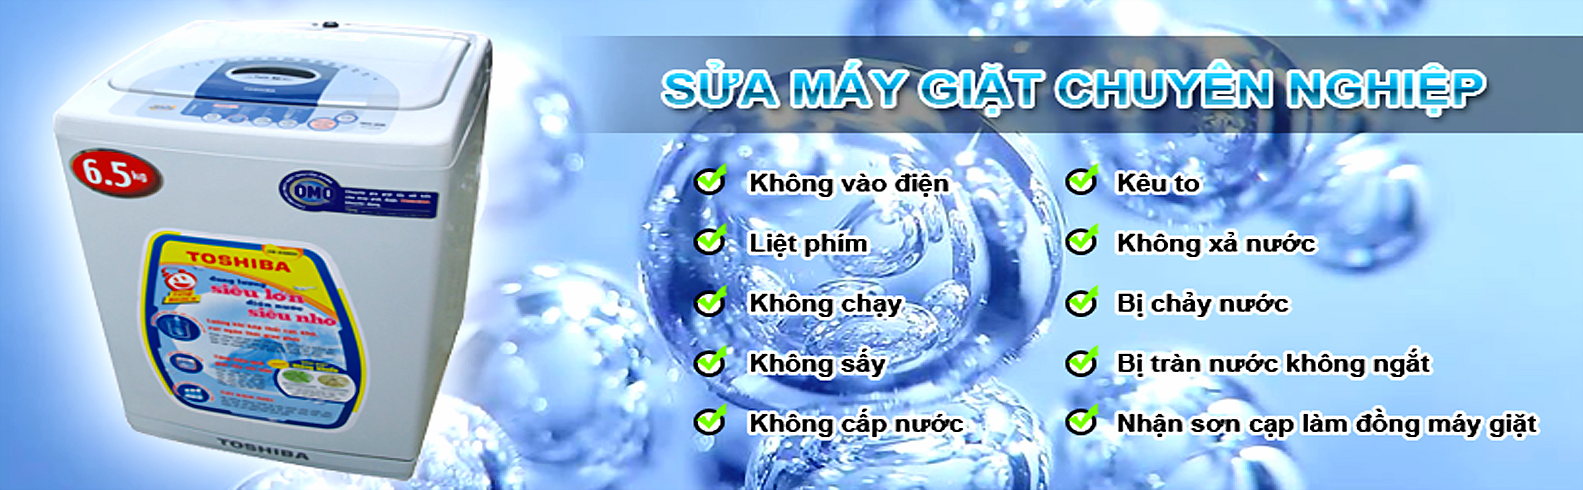 Dịch Vụ Sửa Chữa Máy Giặt Quận 2 Sài Gòn